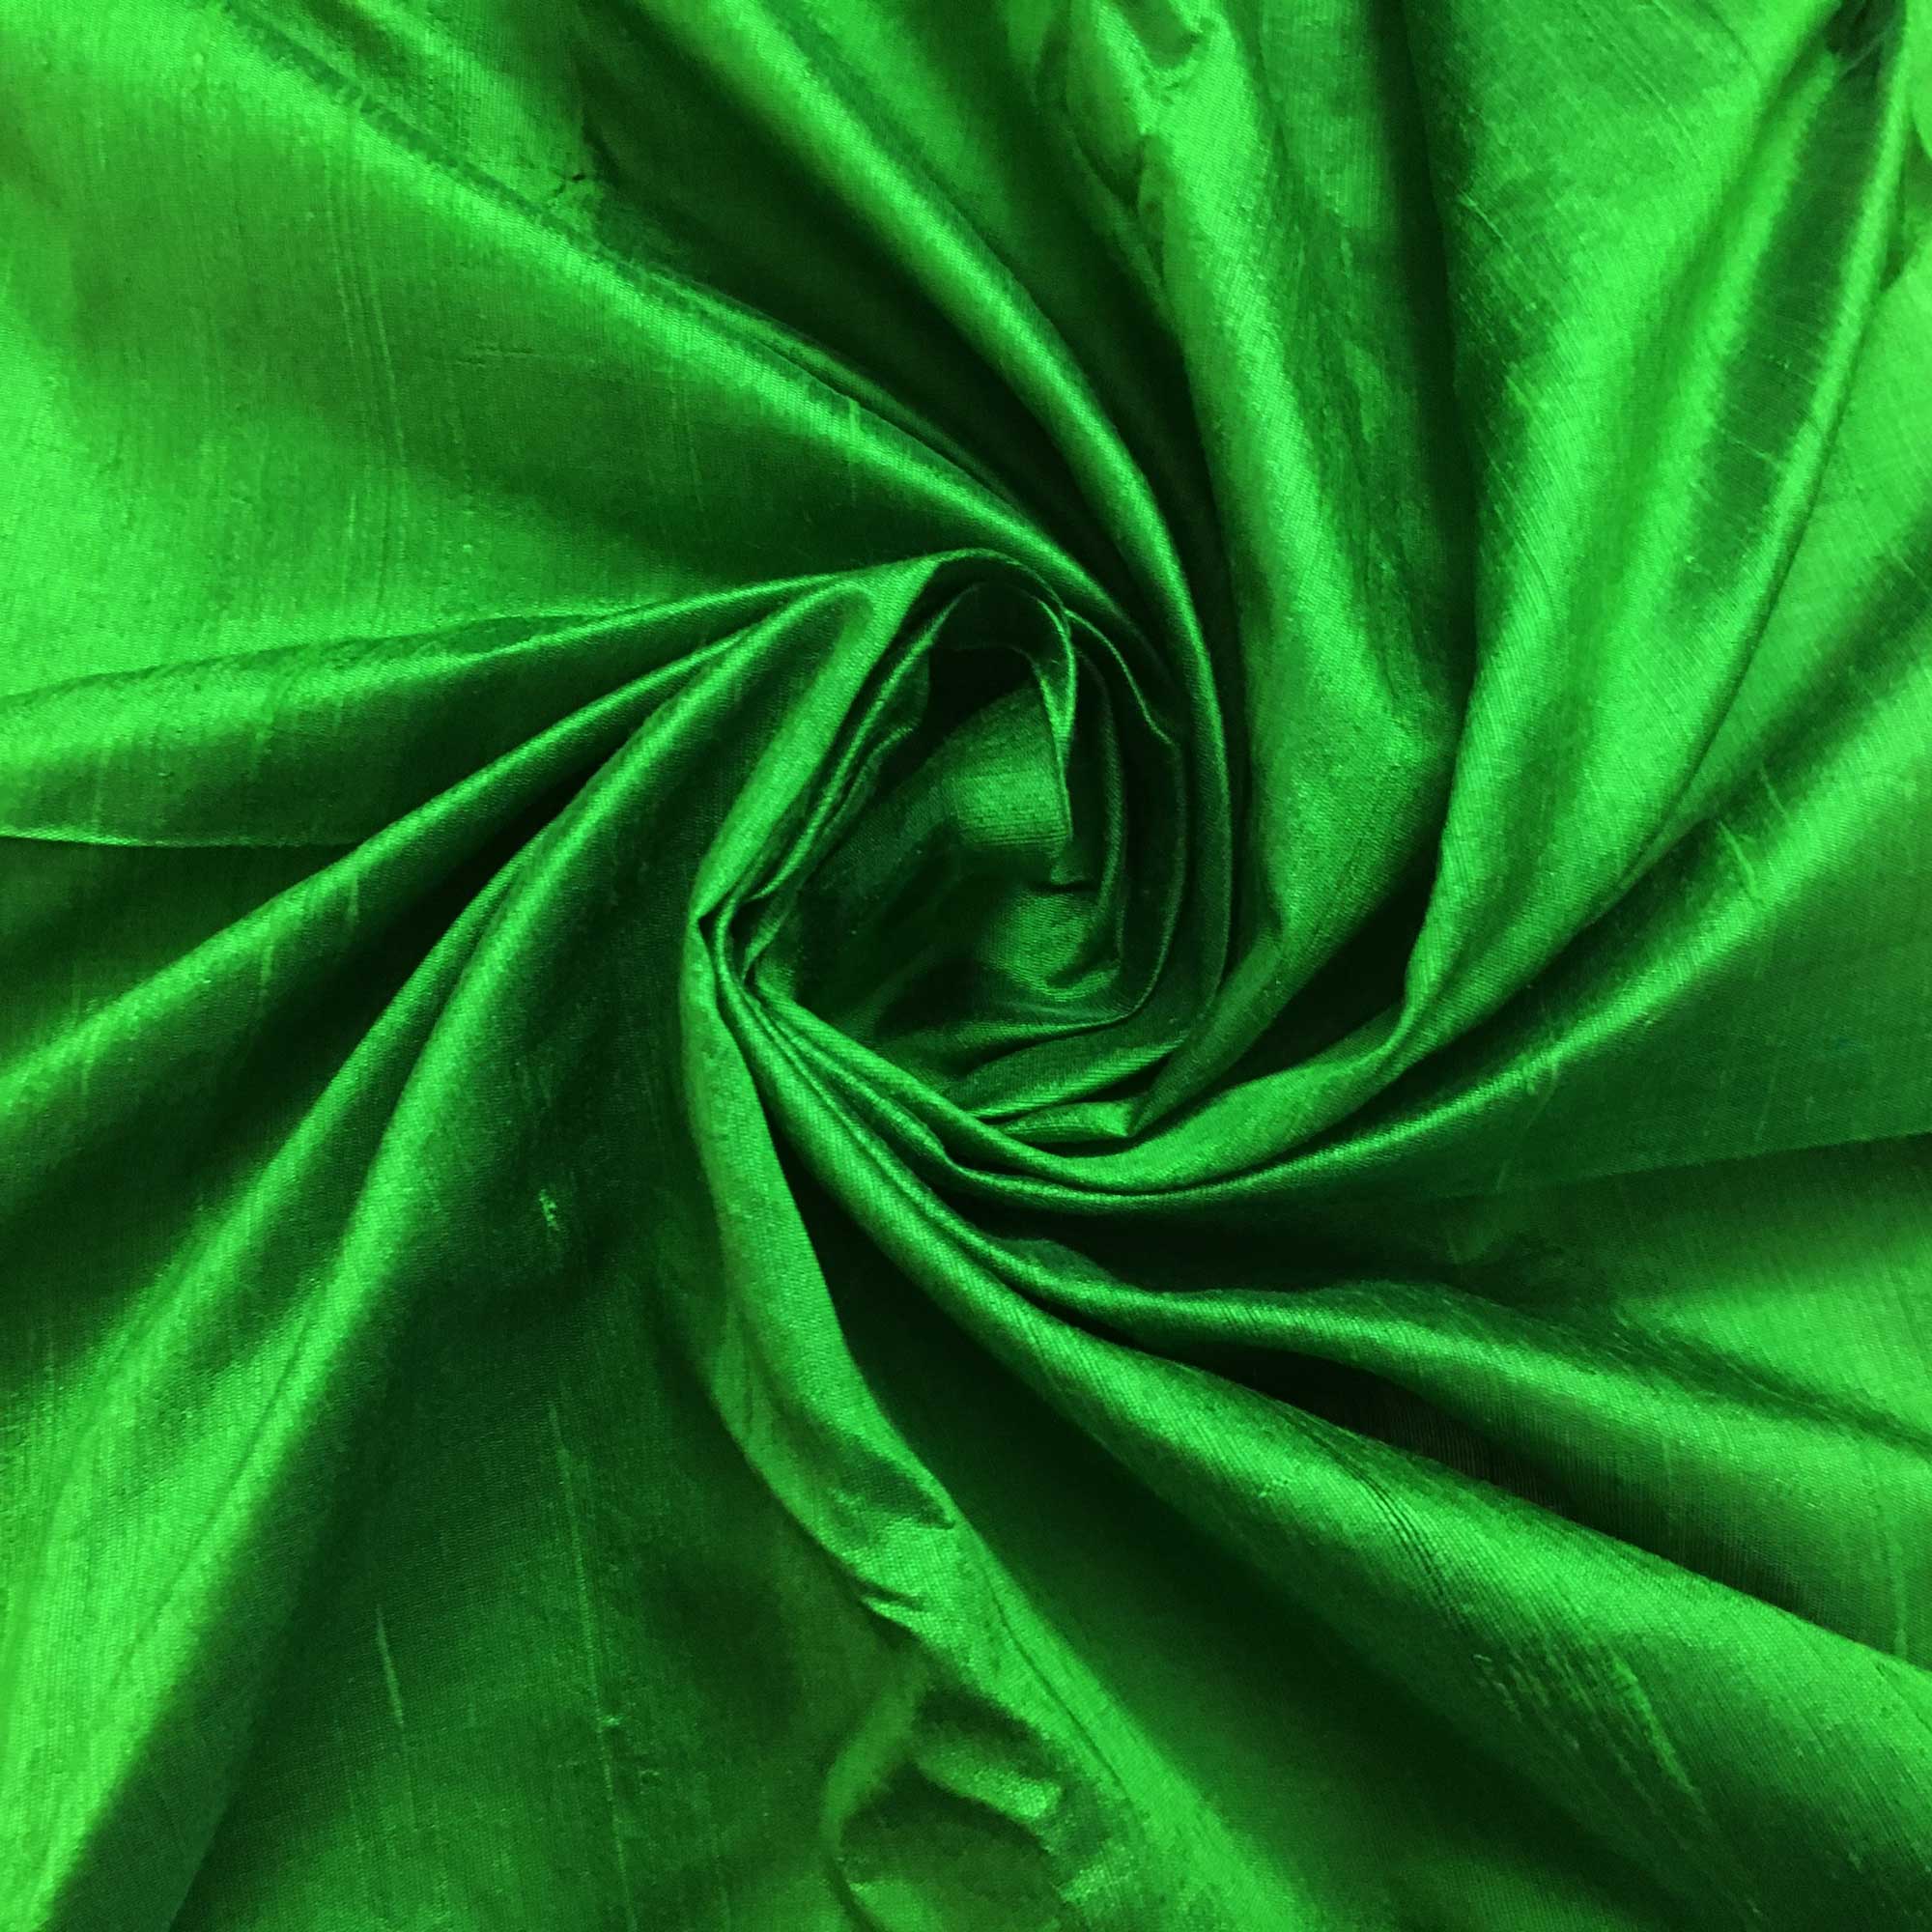 https://www.desicraftshop.com/cdn/shop/products/emerald-green-silk.jpg?v=1562926553